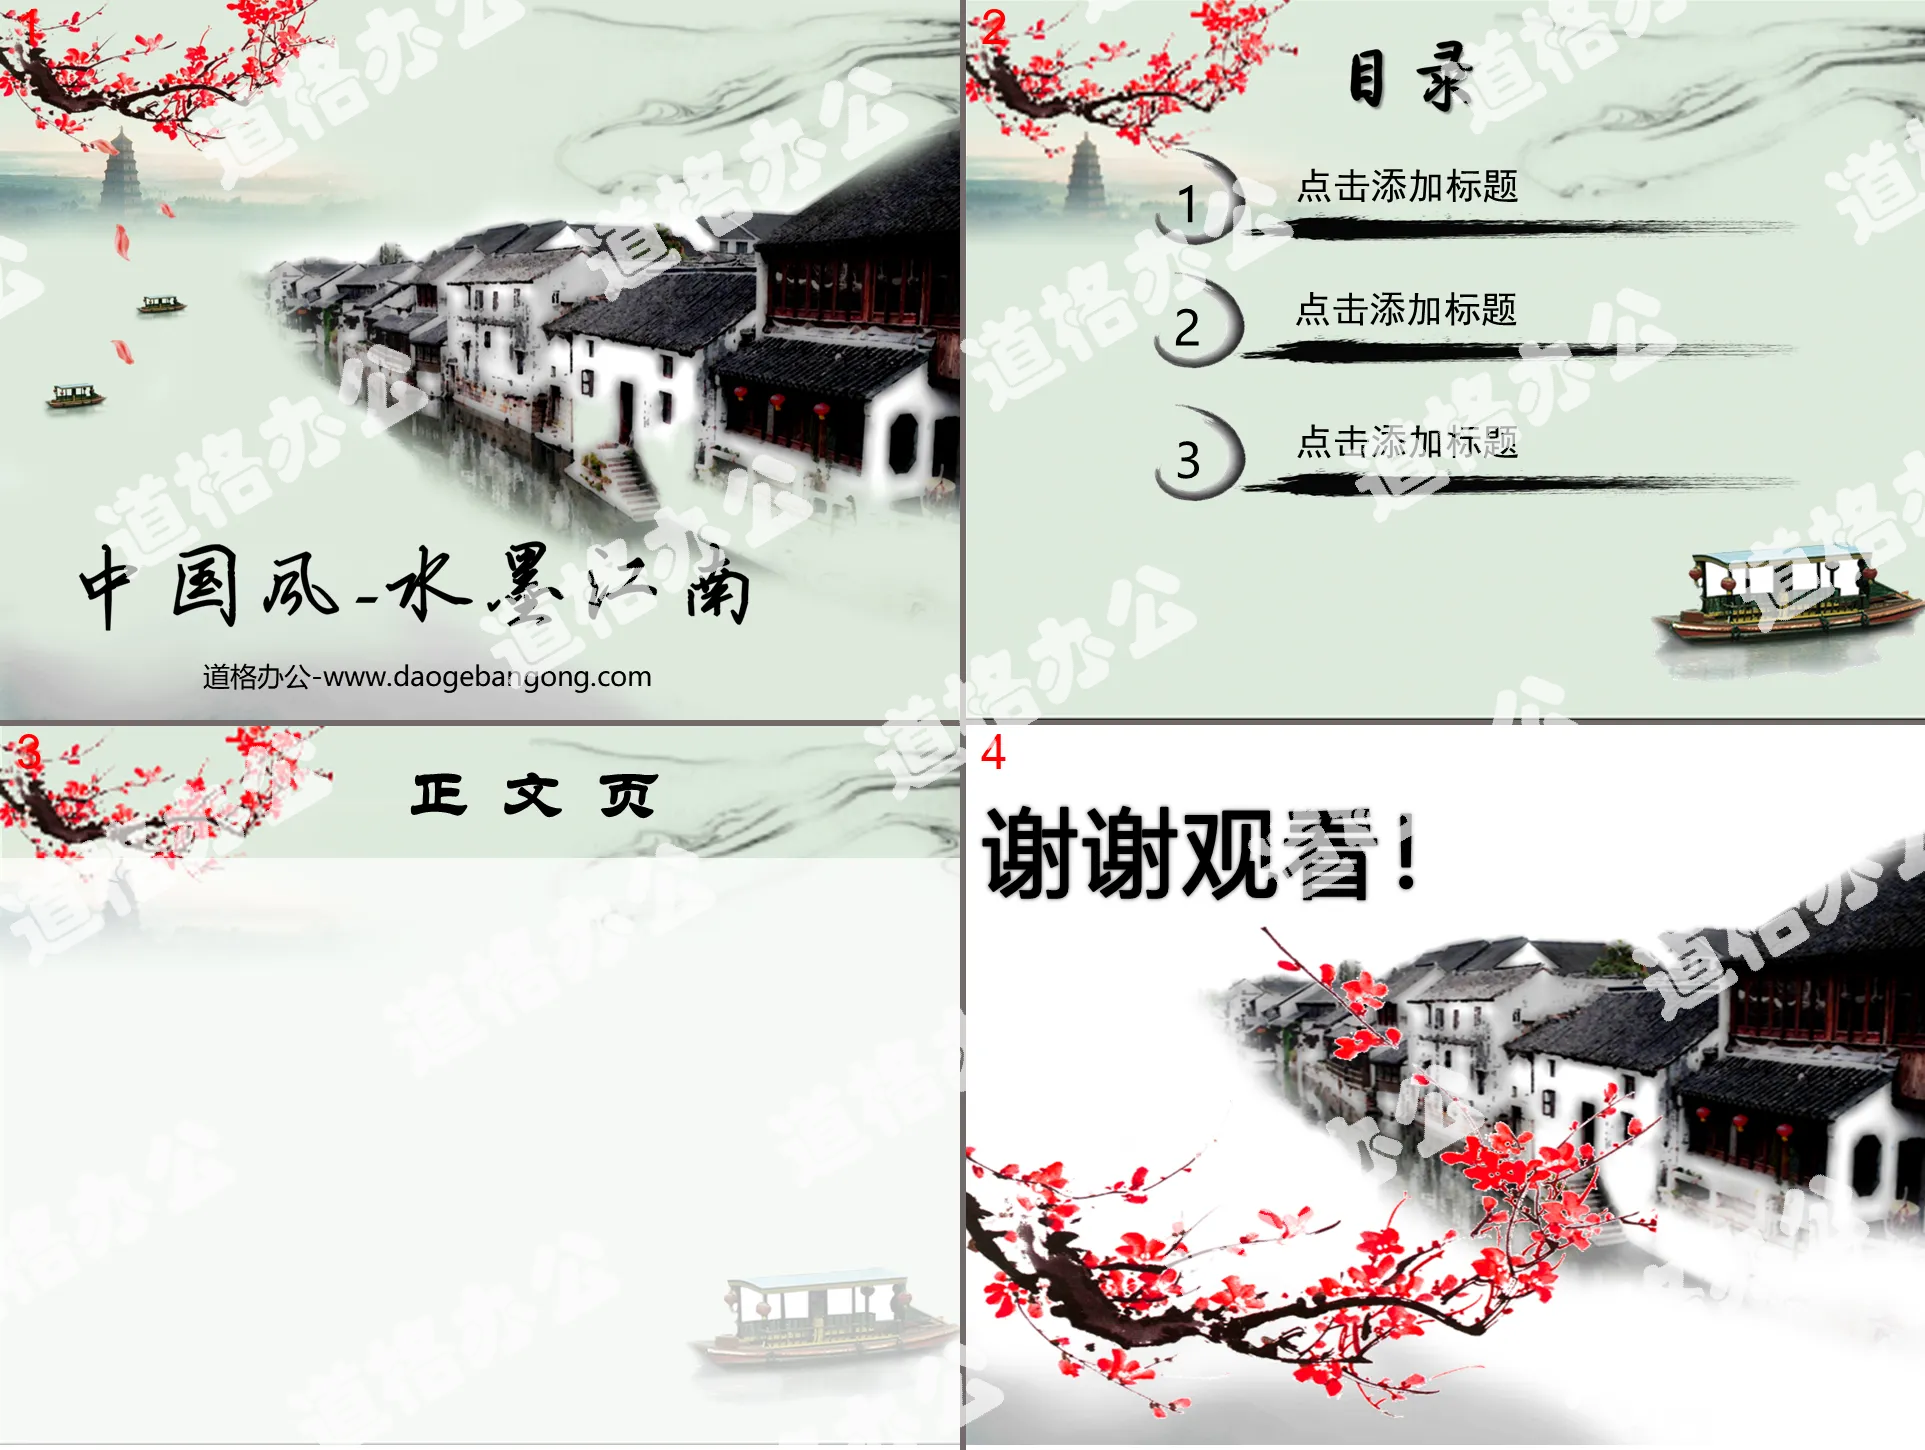 水墨画背景的中国风幻灯片模板